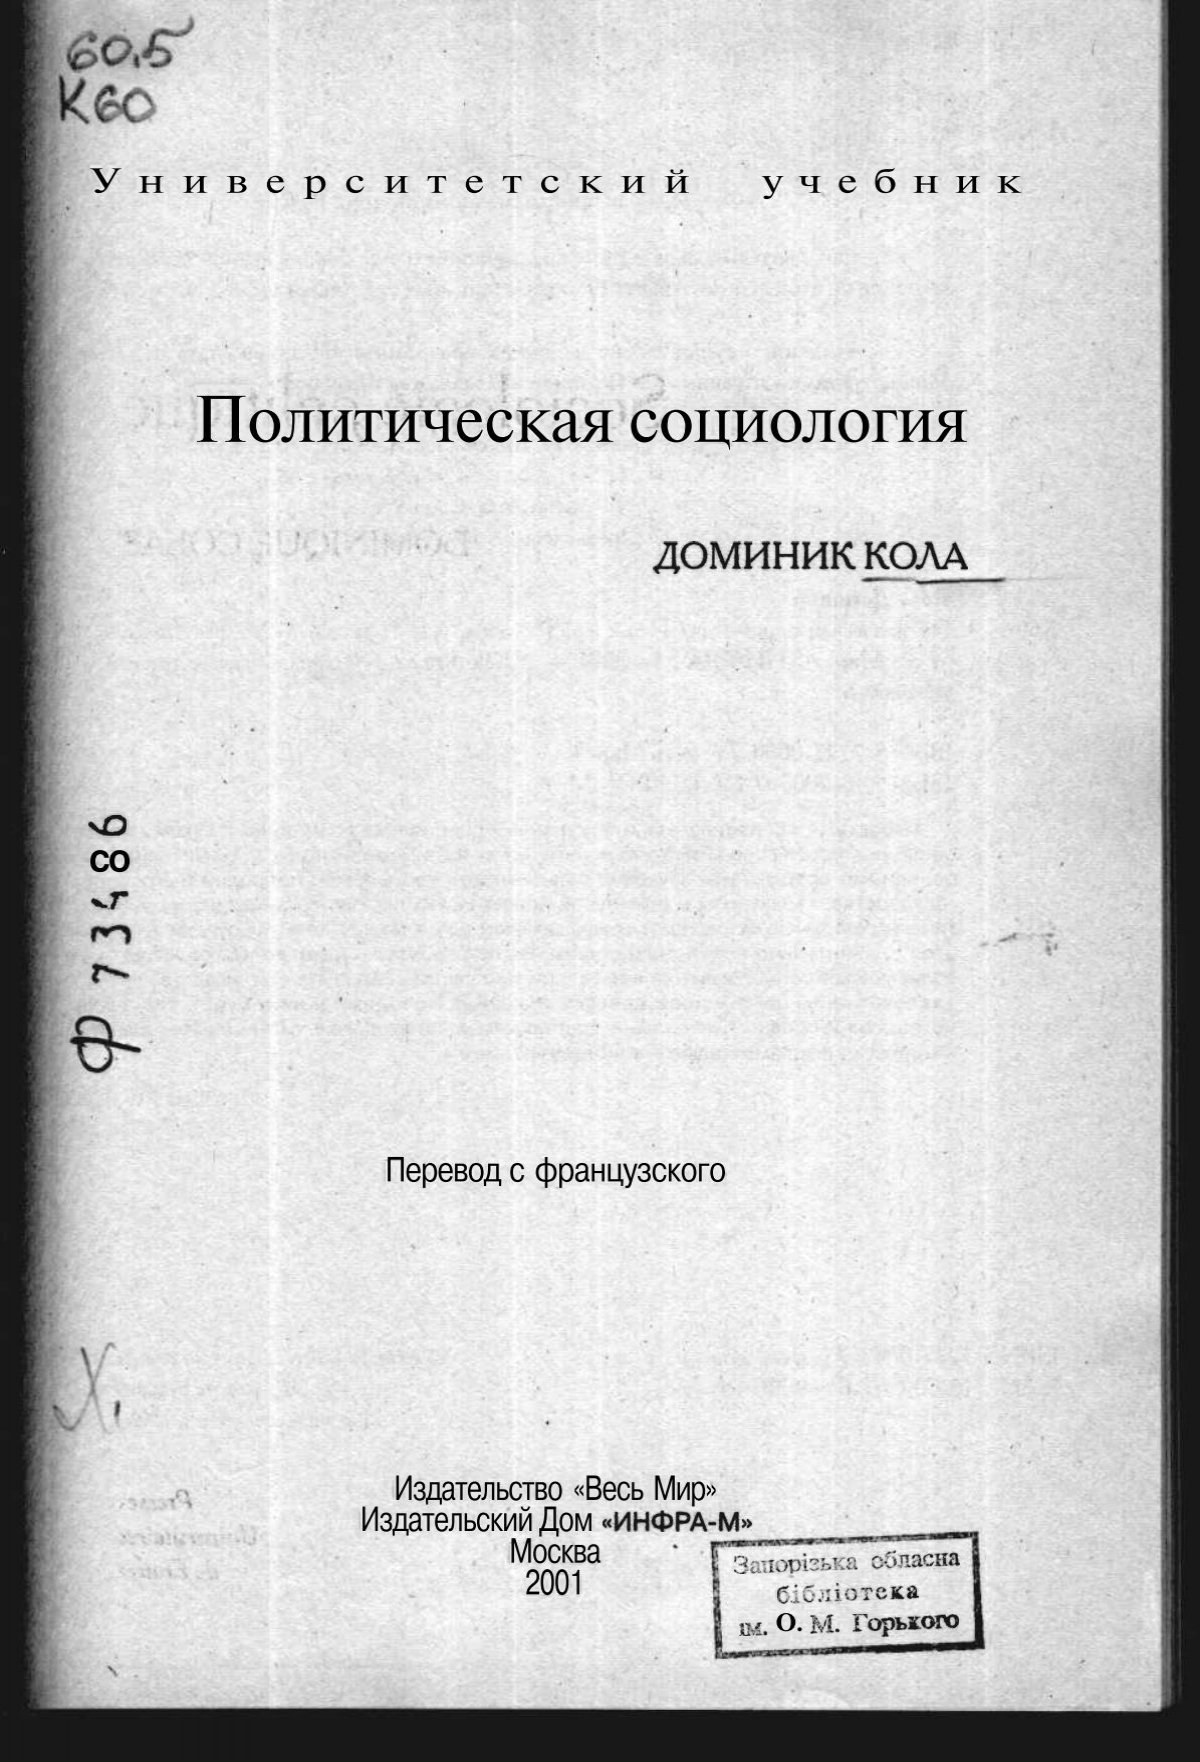 Доклад: В СССР на тему сексуальных отклонений было наложено абсолютное табу